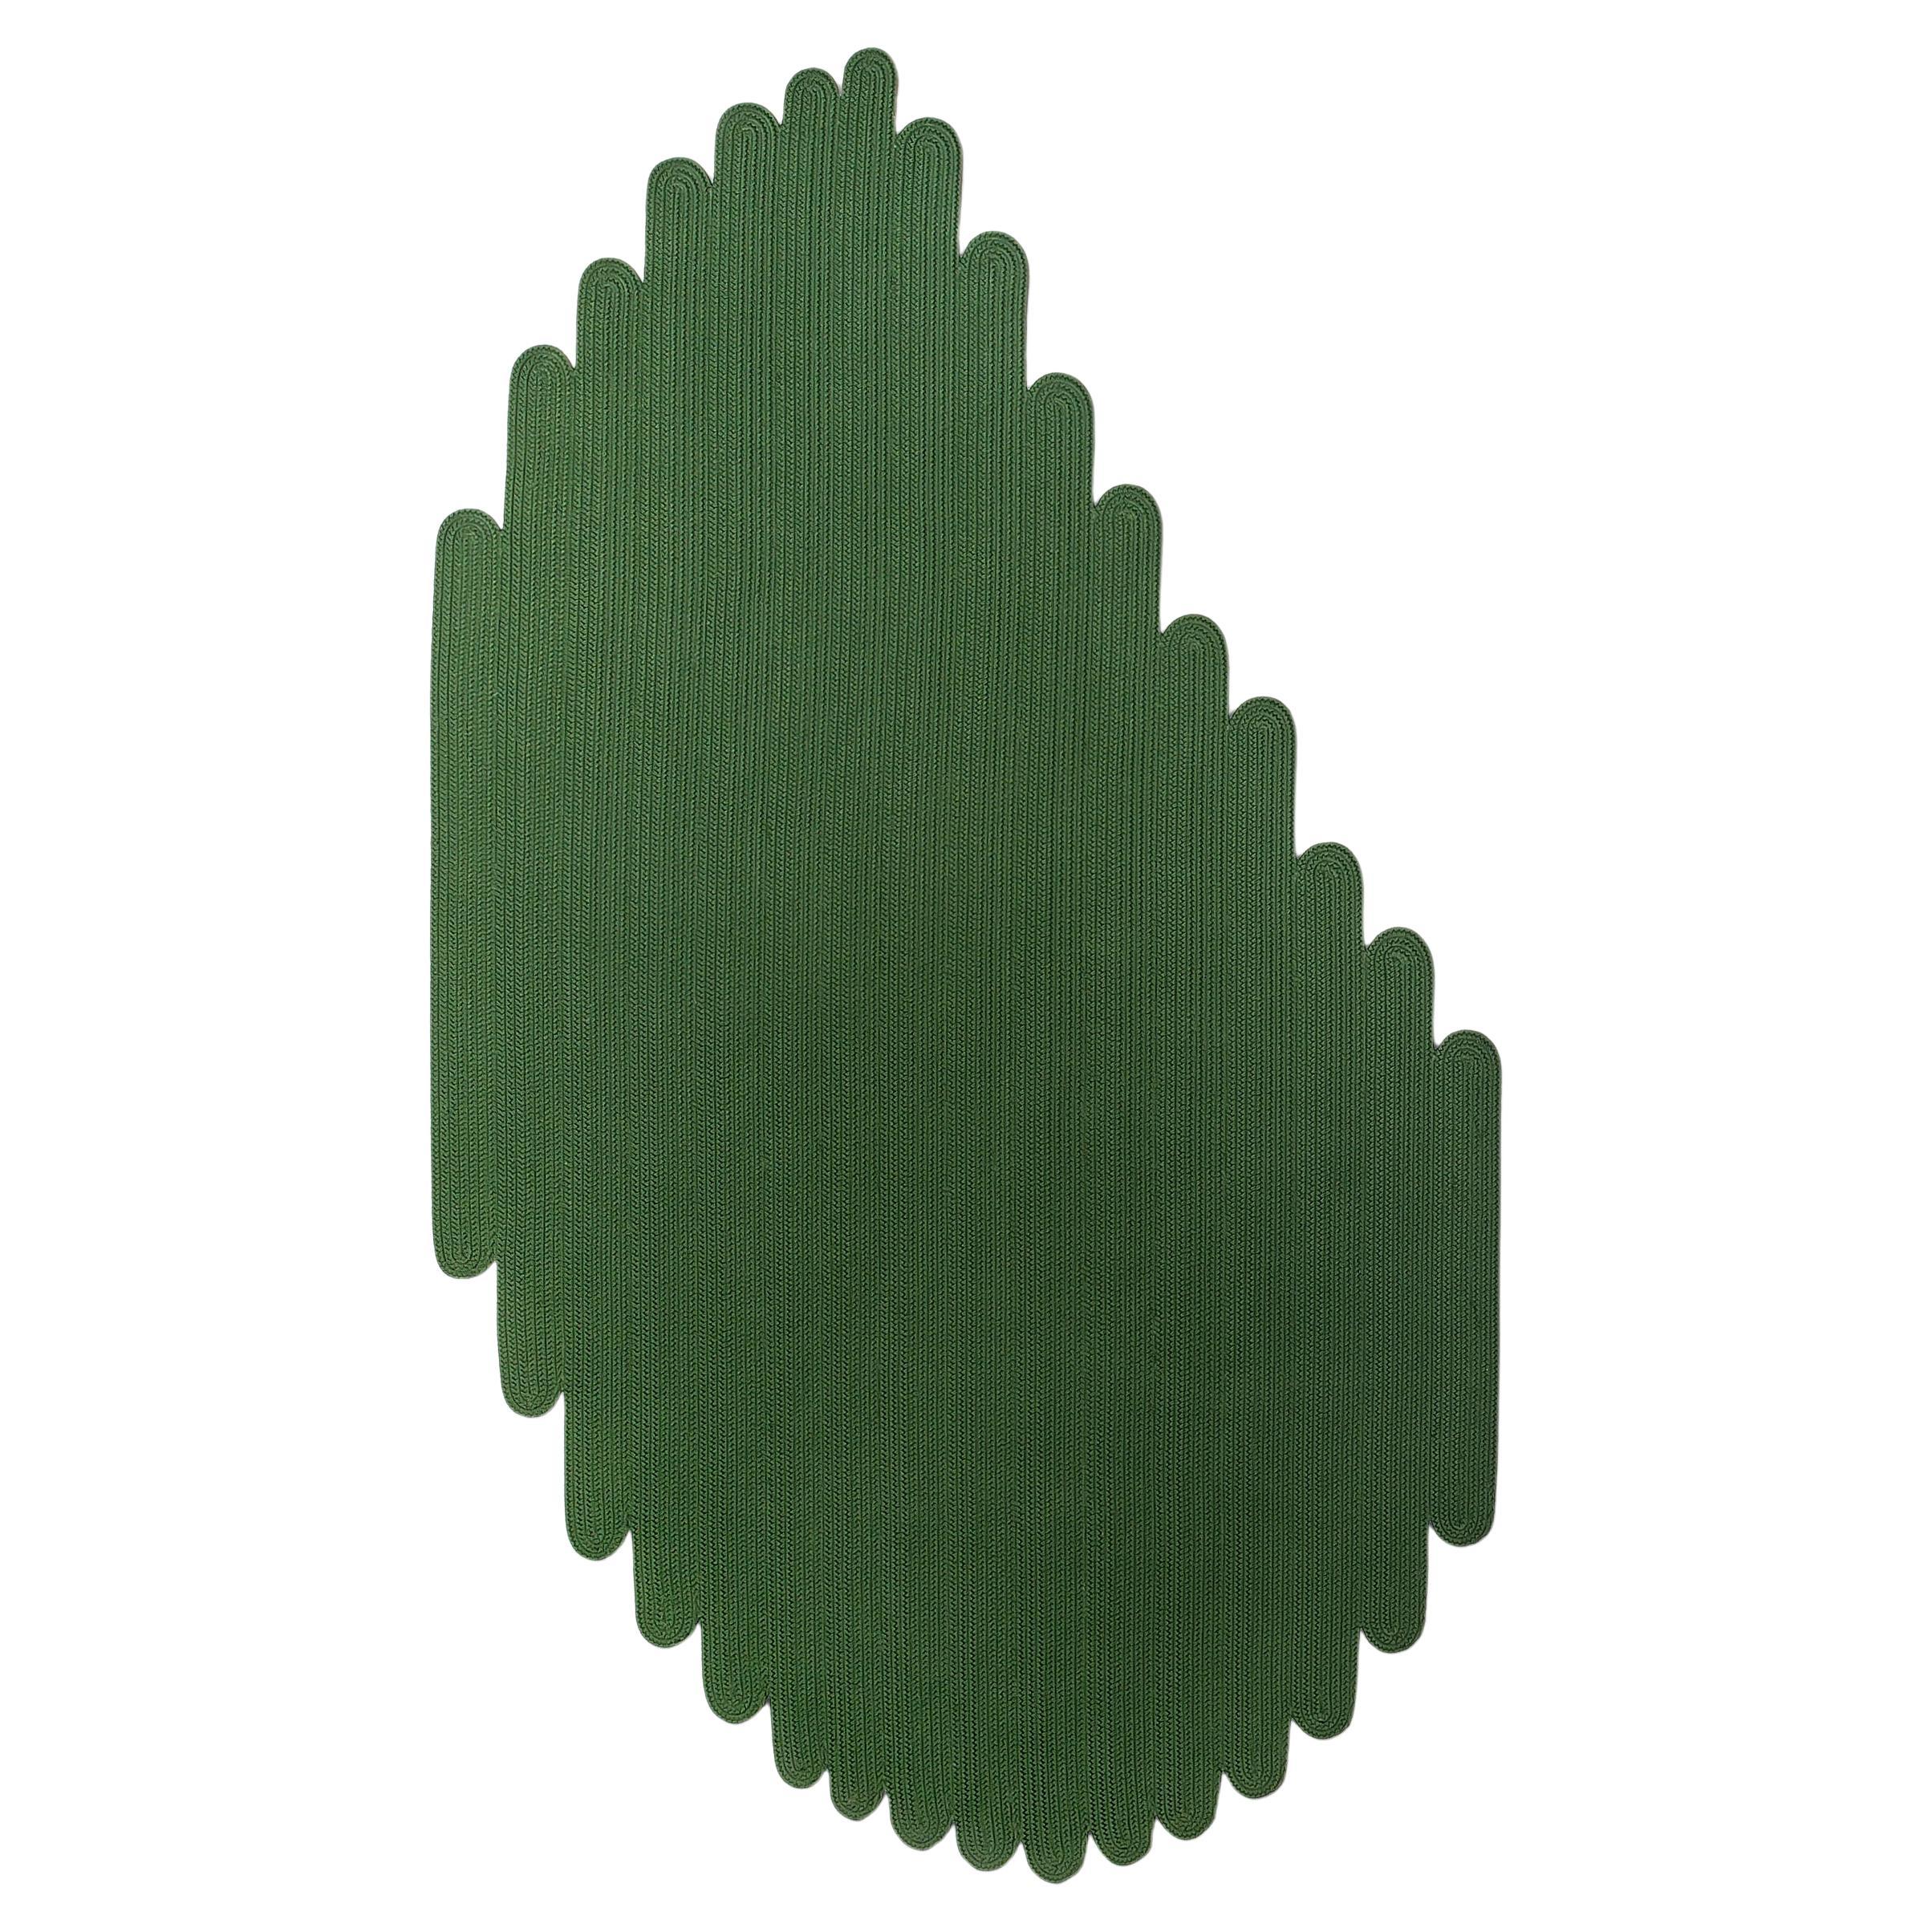 Tappeto forma foglia outdoor verde design italiano by Deanna Comellini 144x250cm For Sale